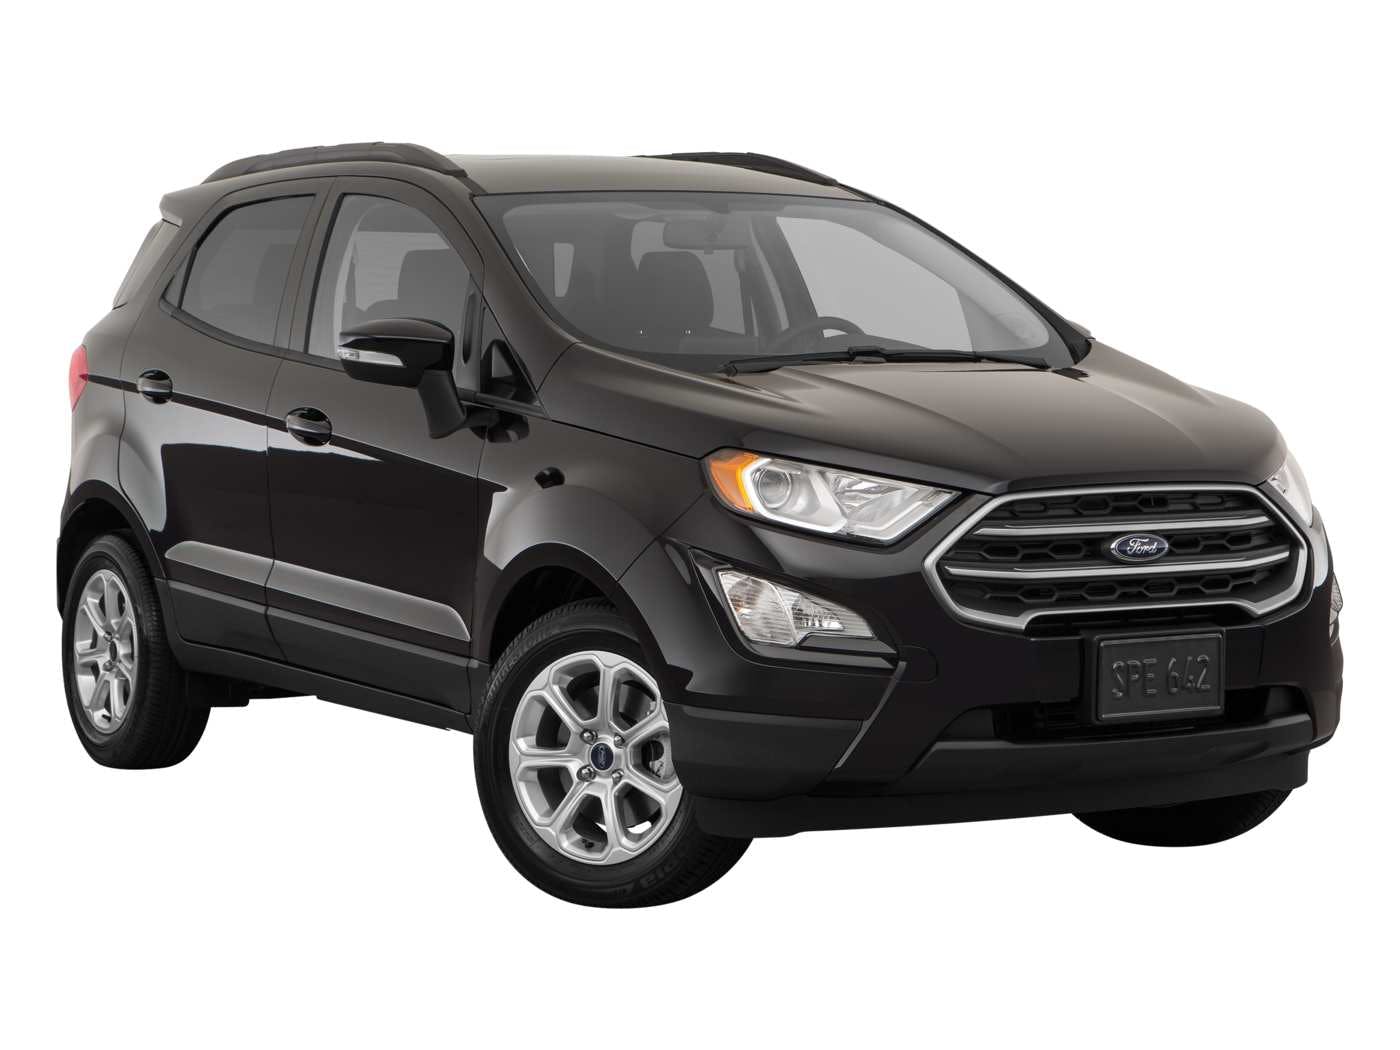 2019 Ford EcoSport Review  Pricing, Trims & Photos - TrueCar